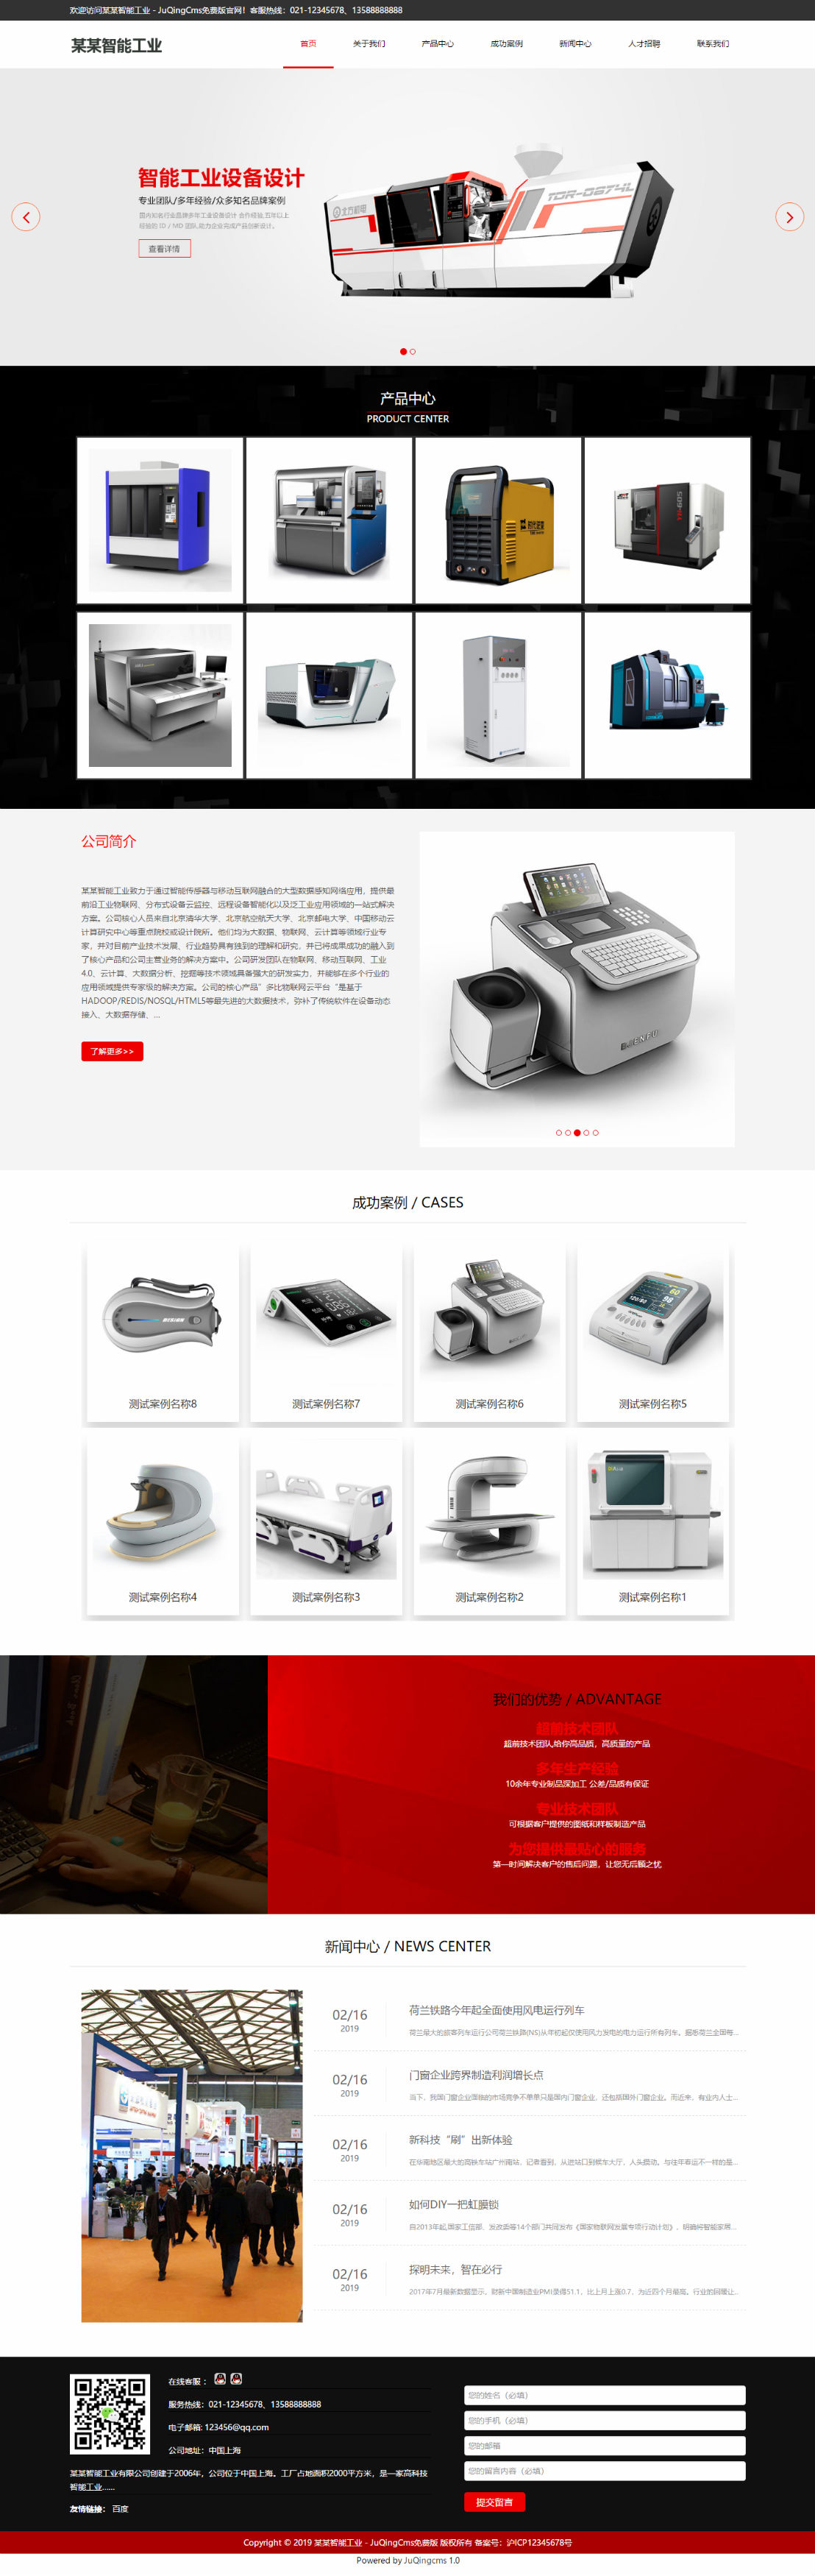 工业网站模板 设备网站模板 智能ai机器人网站模板 a004